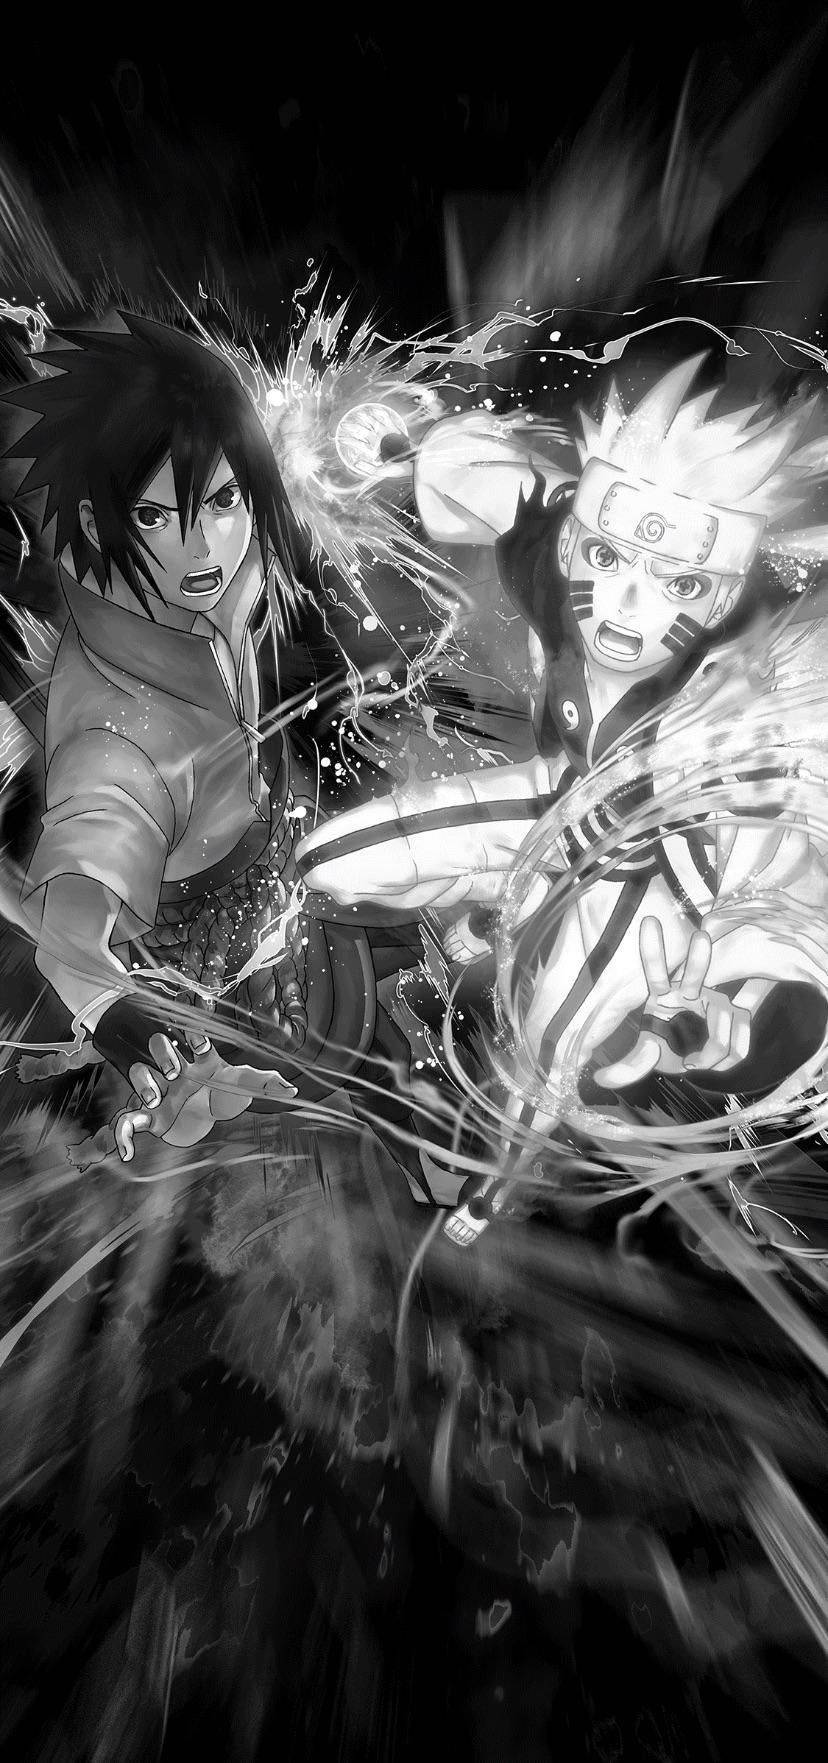 Naruto And Sasuke Anime Black And White Iphone Wallpaper